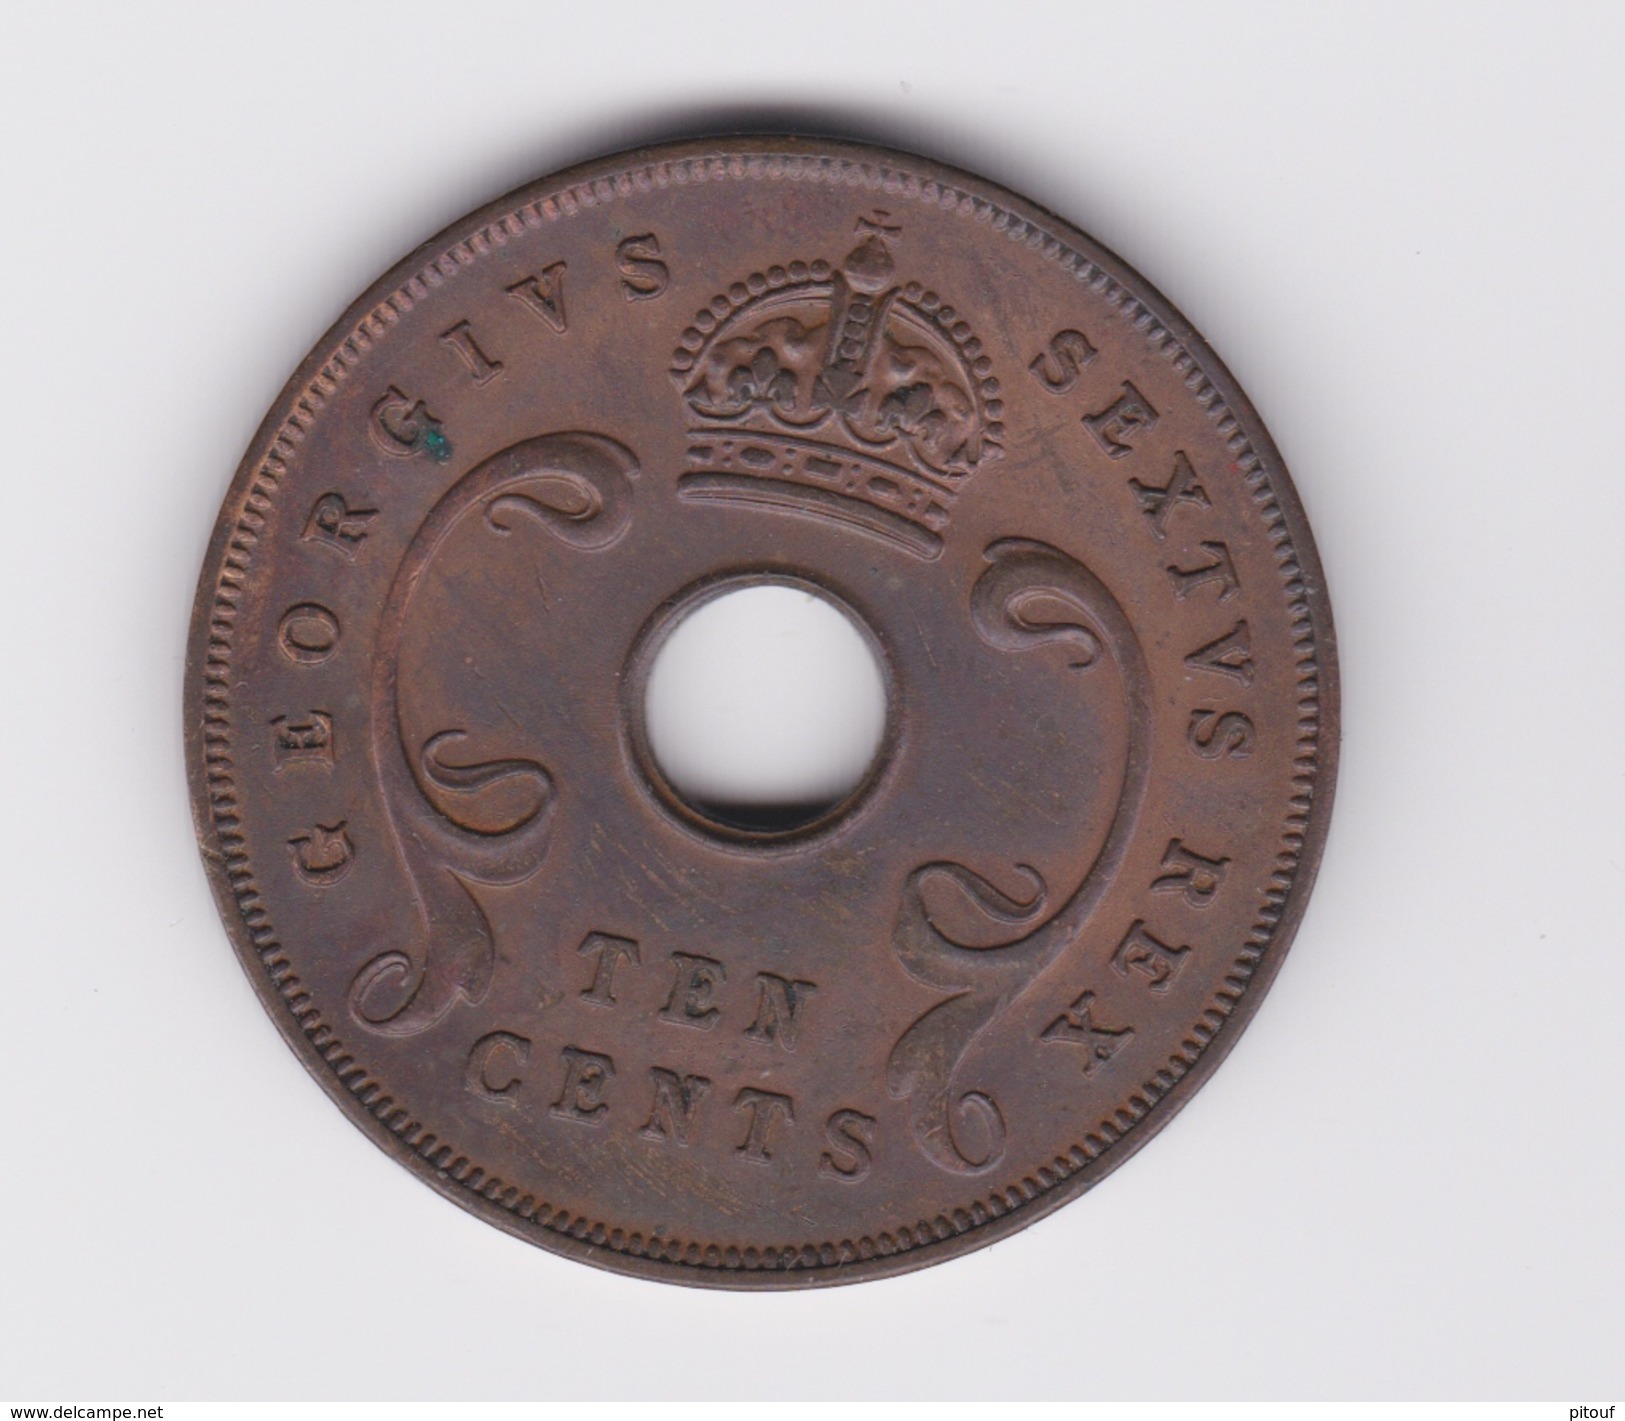 10 Cents East Africa (Grande Bretagne)TTB 1951 - Colonie Britannique